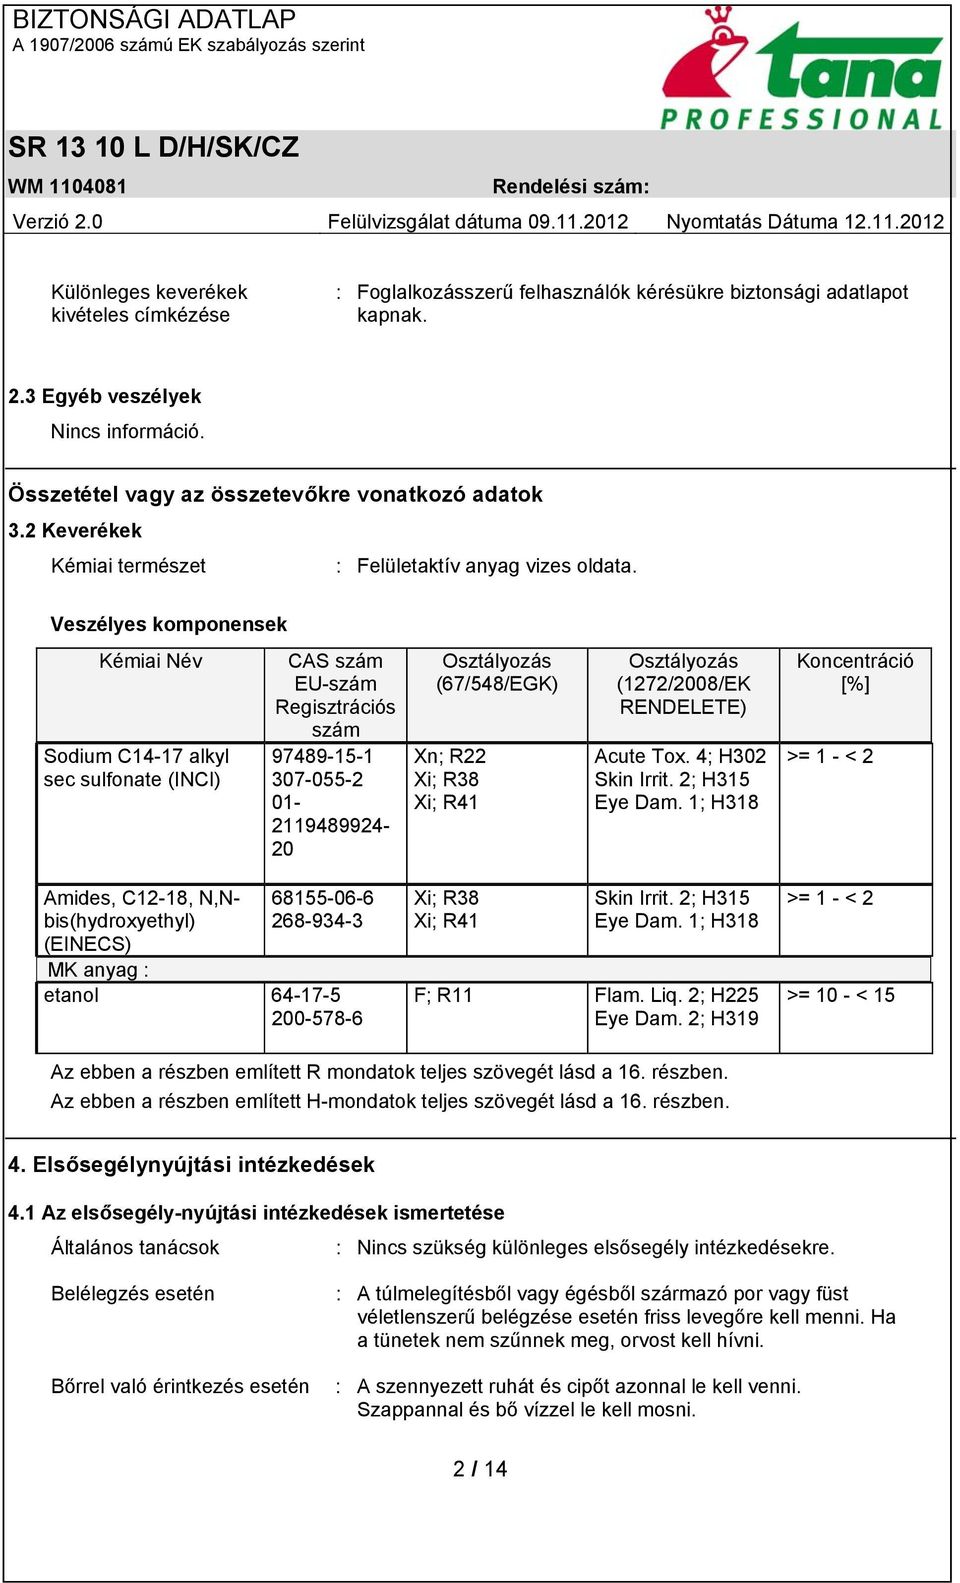 Veszélyes komponensek Kémiai Név Sodium C14-17 alkyl sec sulfonate (INCI) CAS szám EU-szám Regisztrációs szám 97489-15-1 307-055-2 01-2119489924- 20 Osztályozás (67/548/EGK) Xn; R22 Xi; R38 Xi; R41